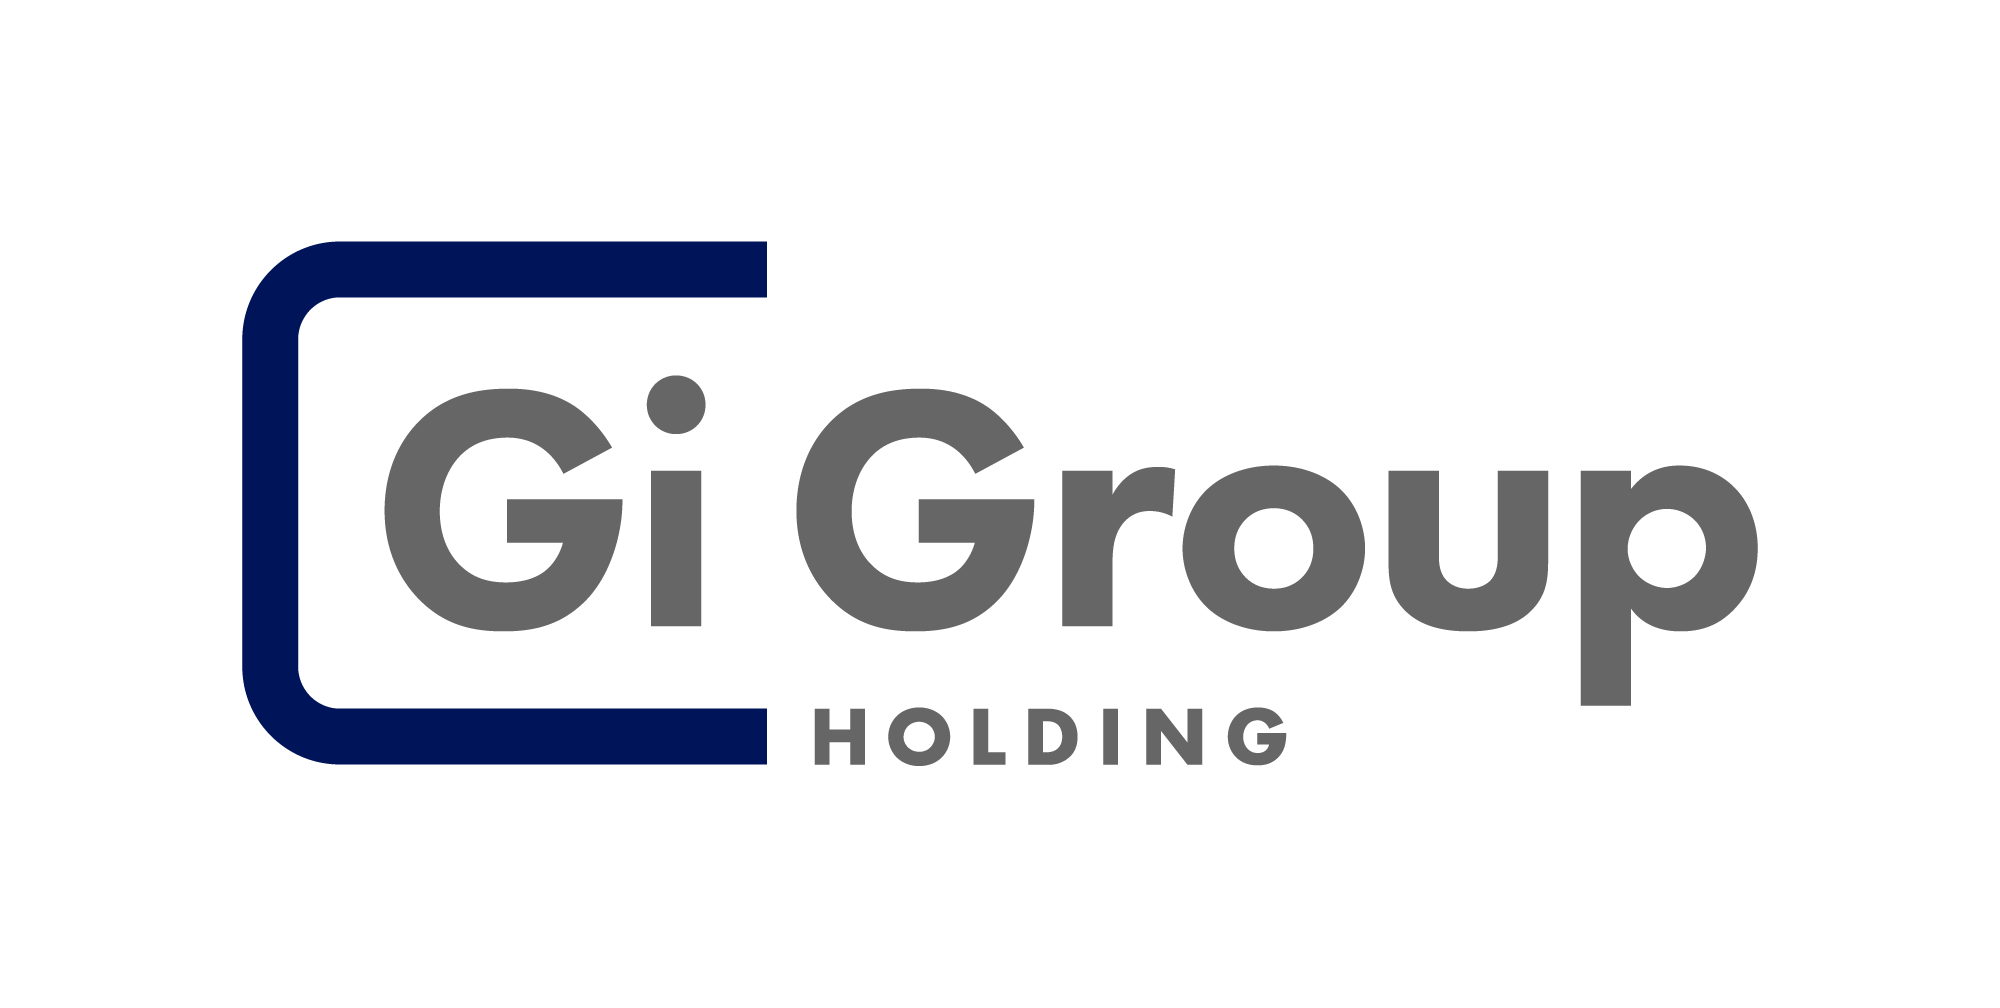 Contratando - a Gi Group Solution